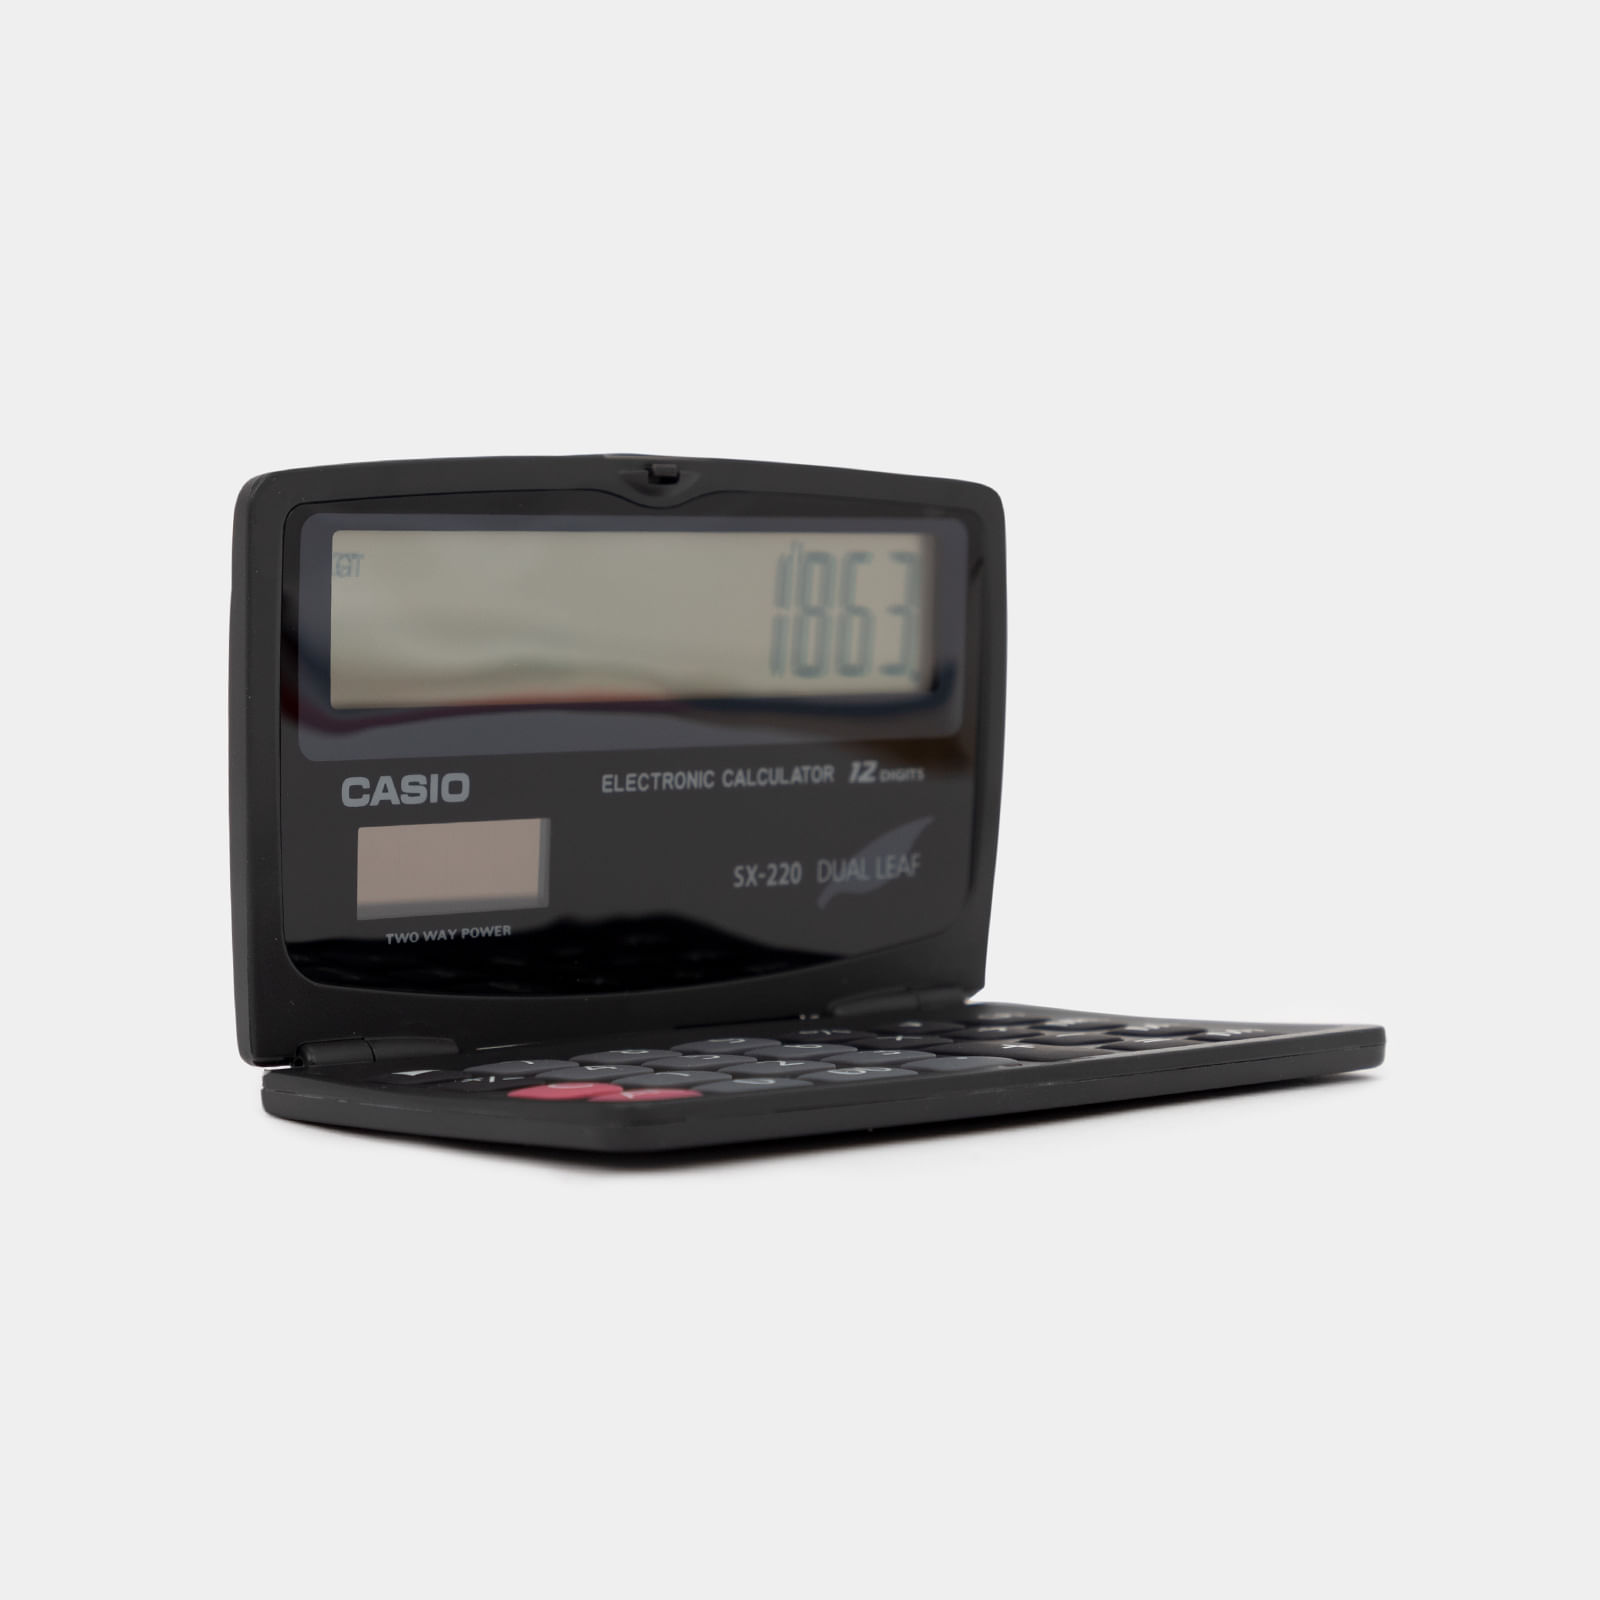 El Casio con calculadora, la gran estrella de los ochenta y noventa